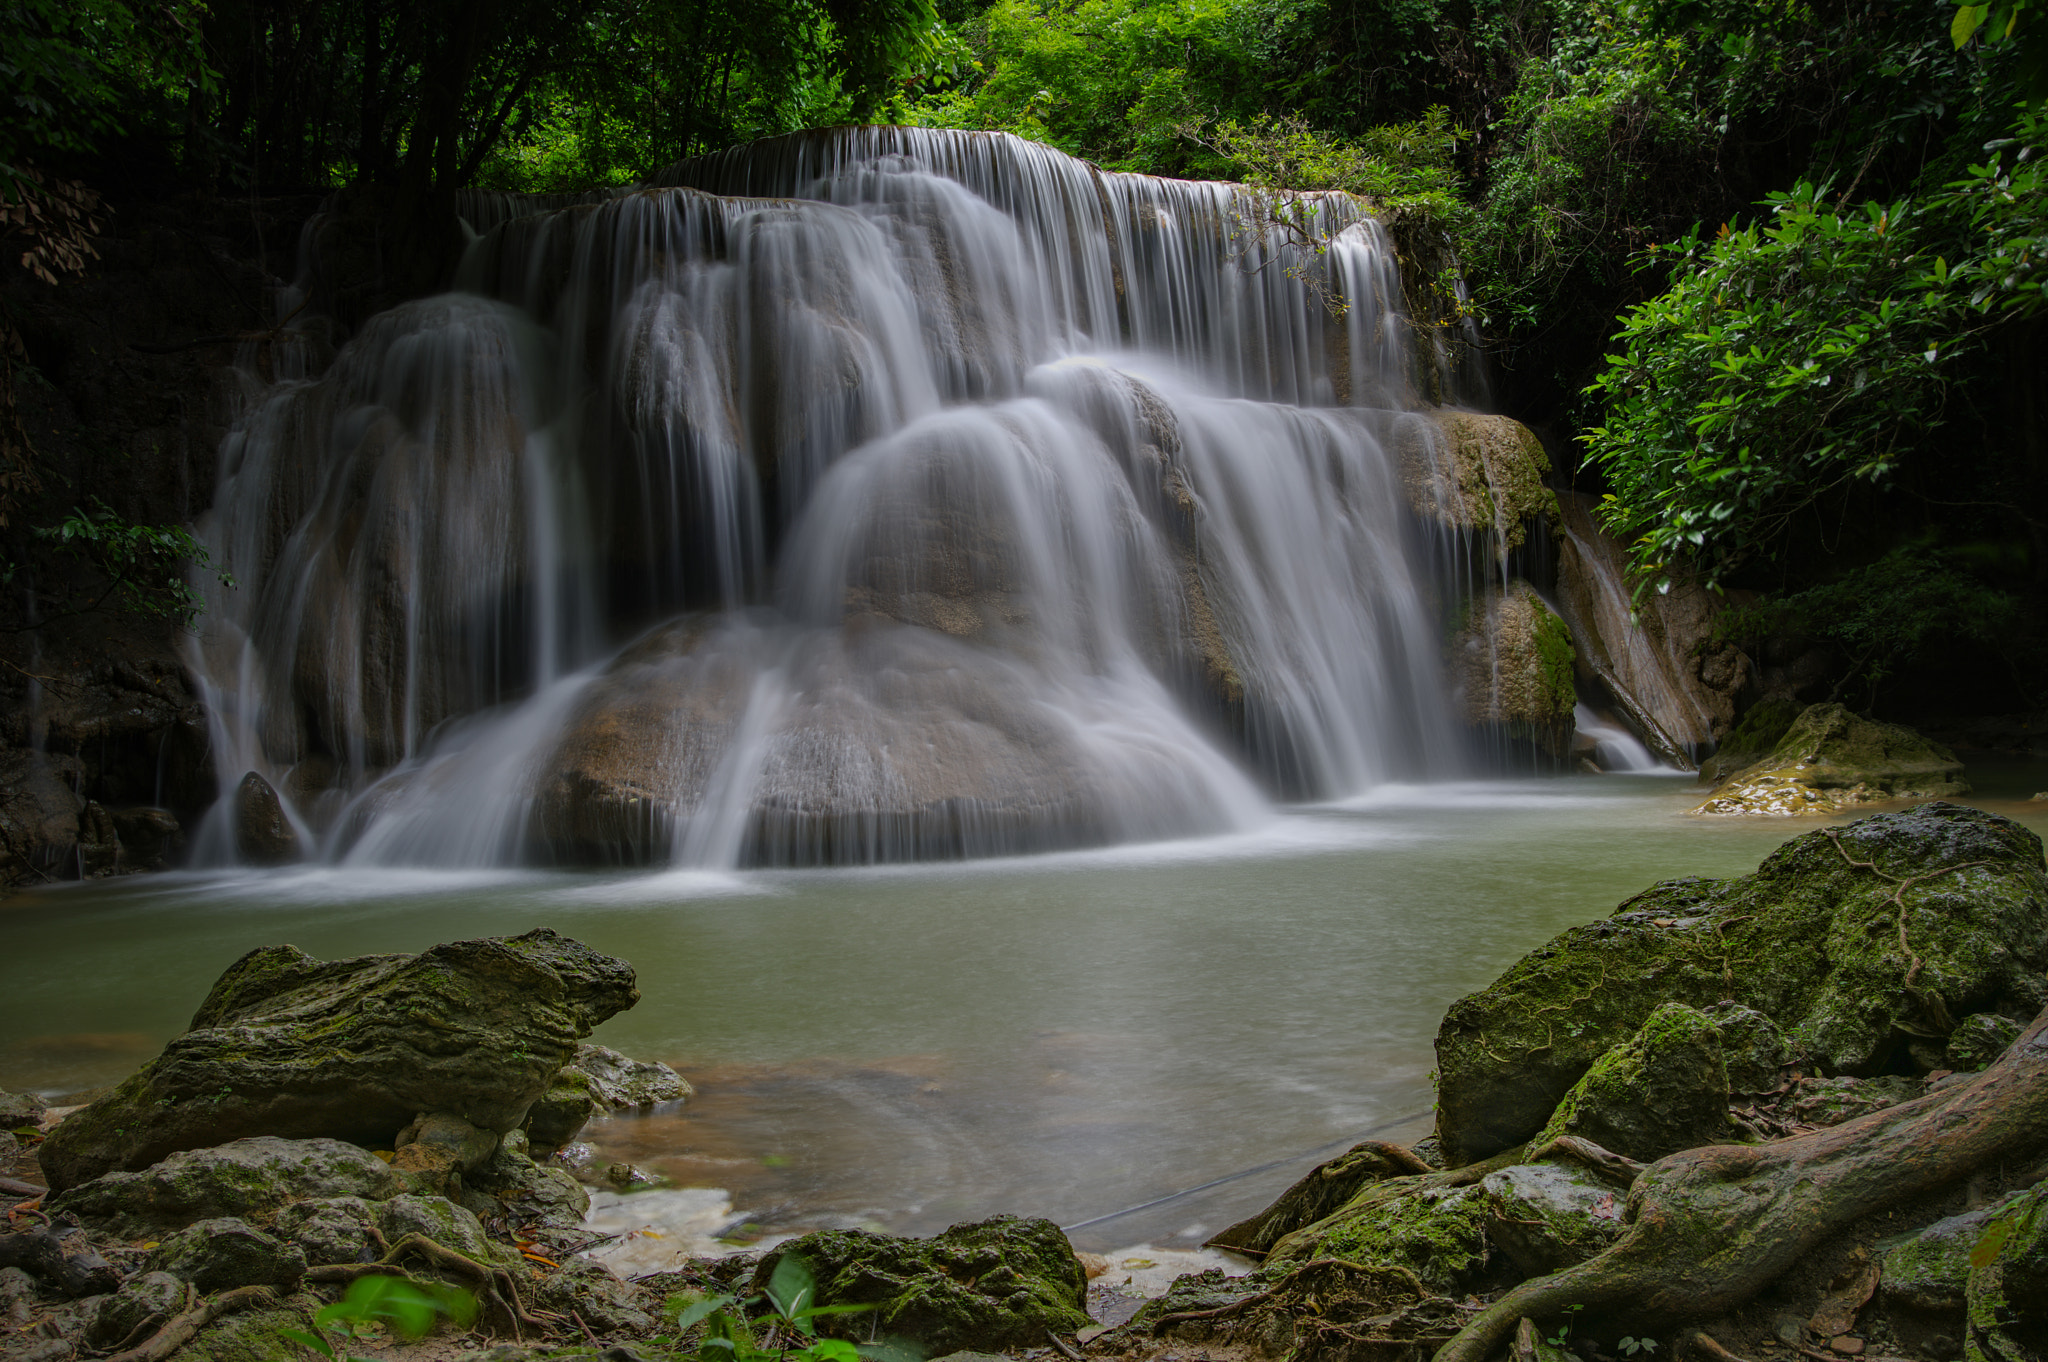 Pentax KP sample photo. Huay mae kamin waterfall at kanchanaburi, thailand photography